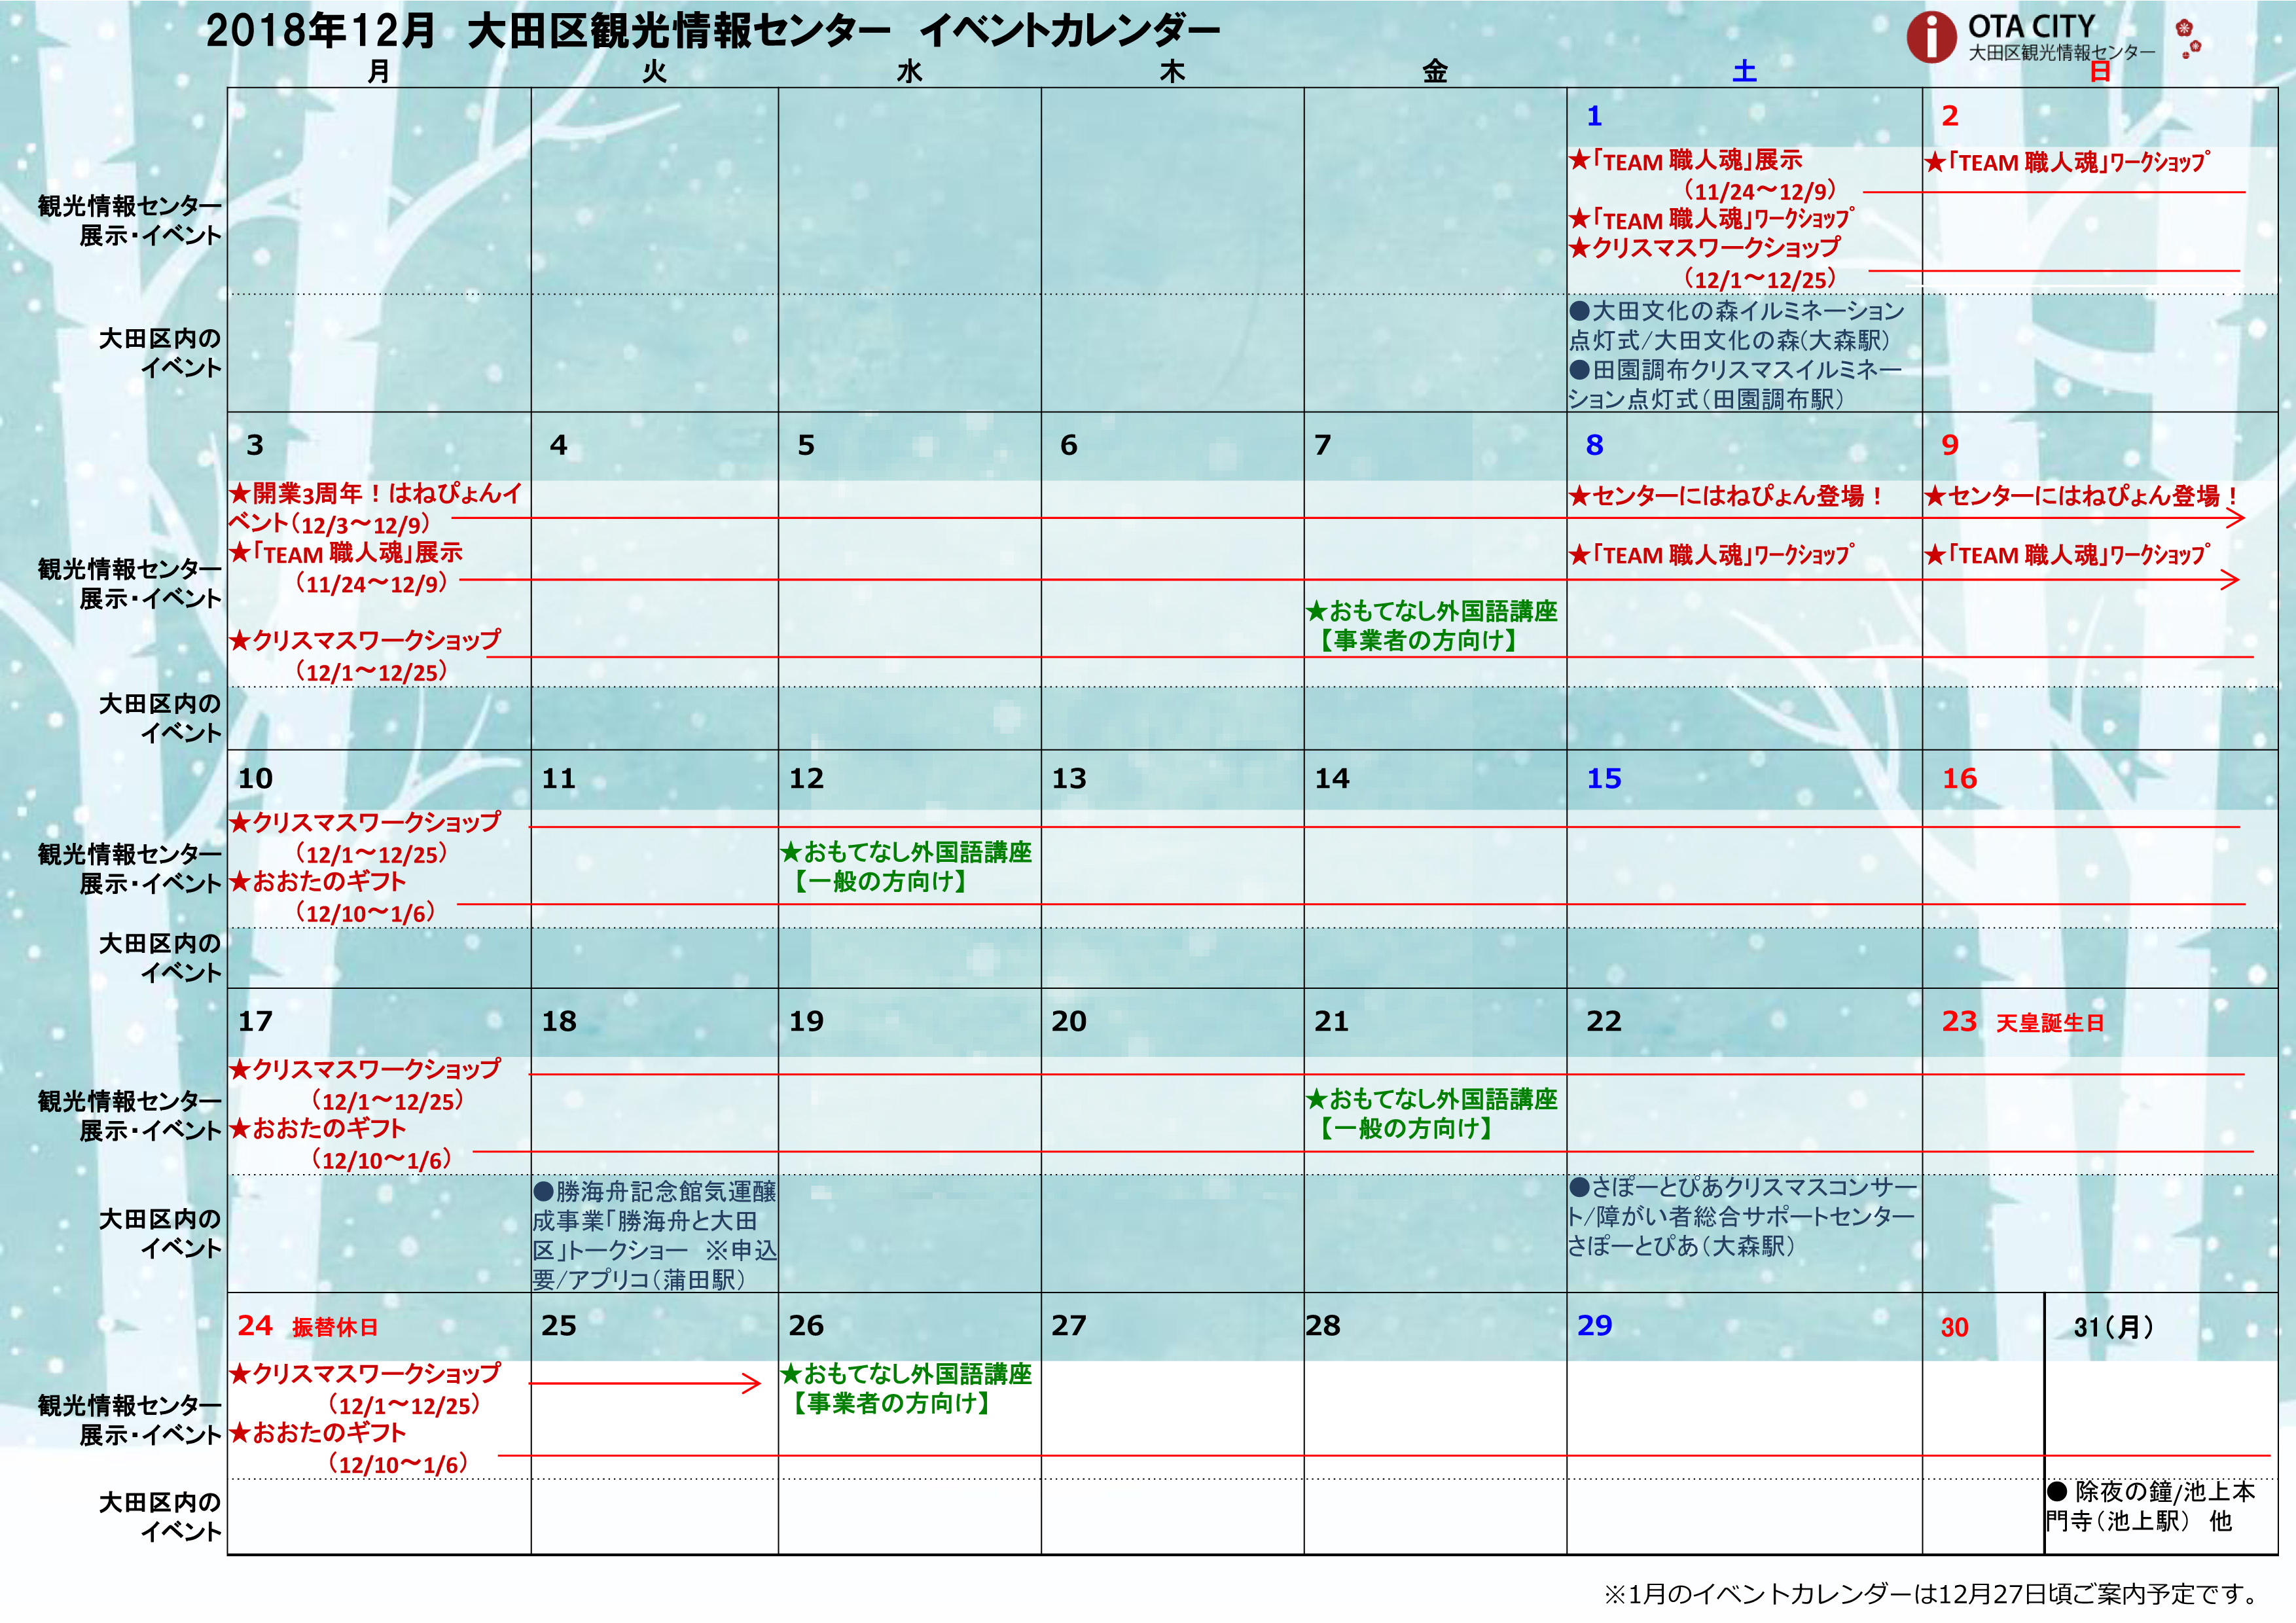 18年12月イベントカレンダー 大田区観光情報センター